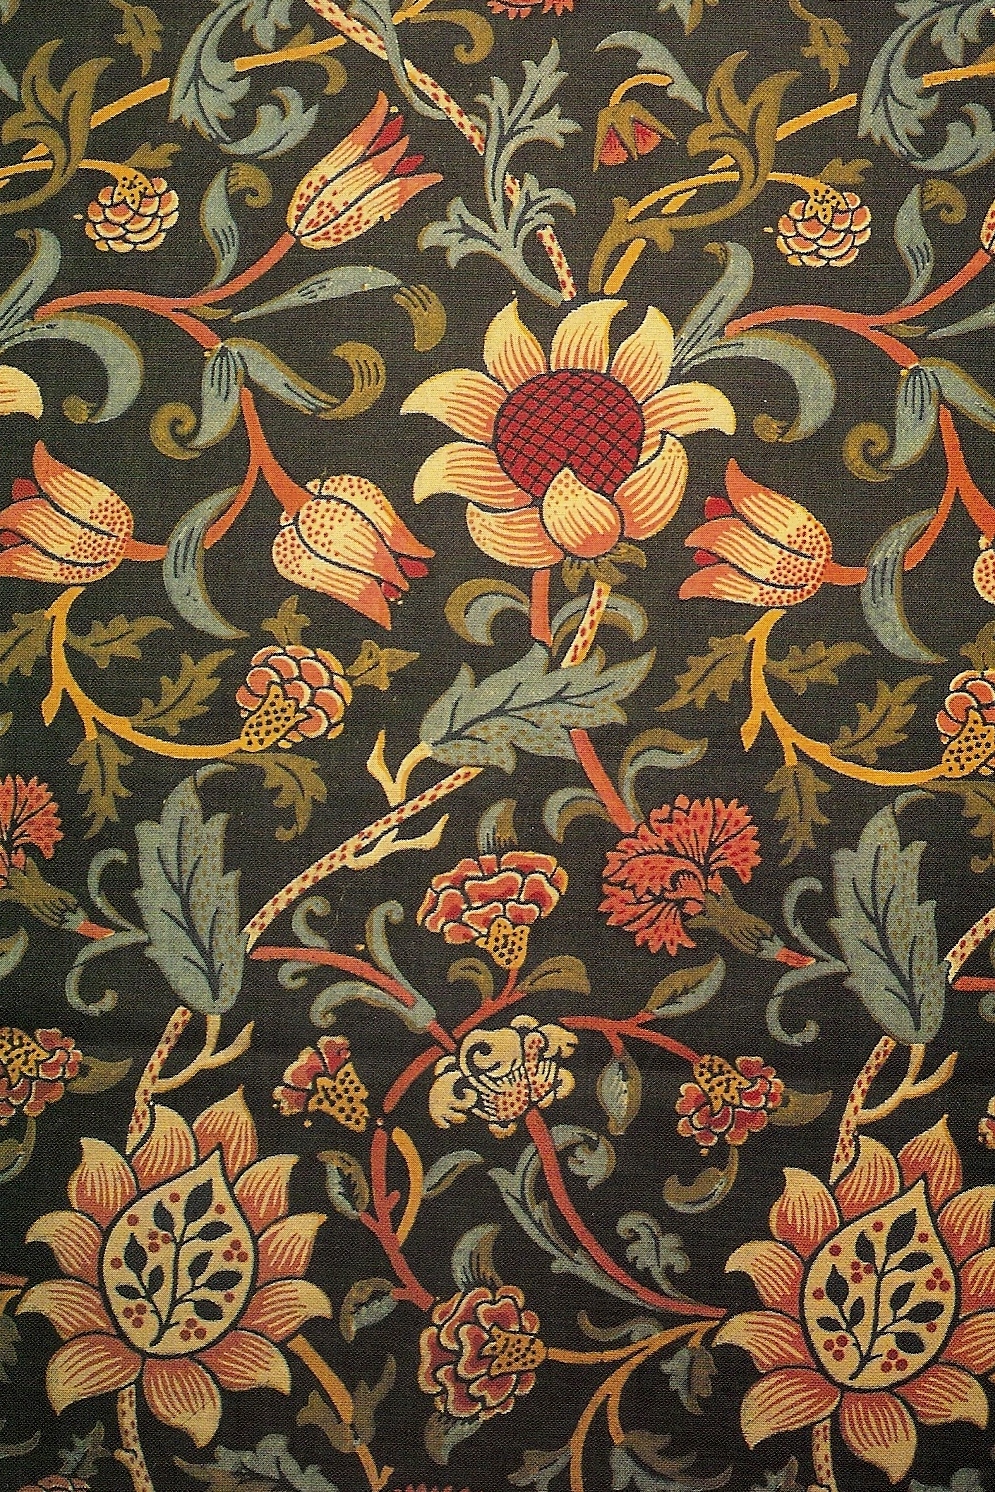 ウィリアムモリススタイルの壁紙,パターン,褐色,オレンジ,花柄,繊維